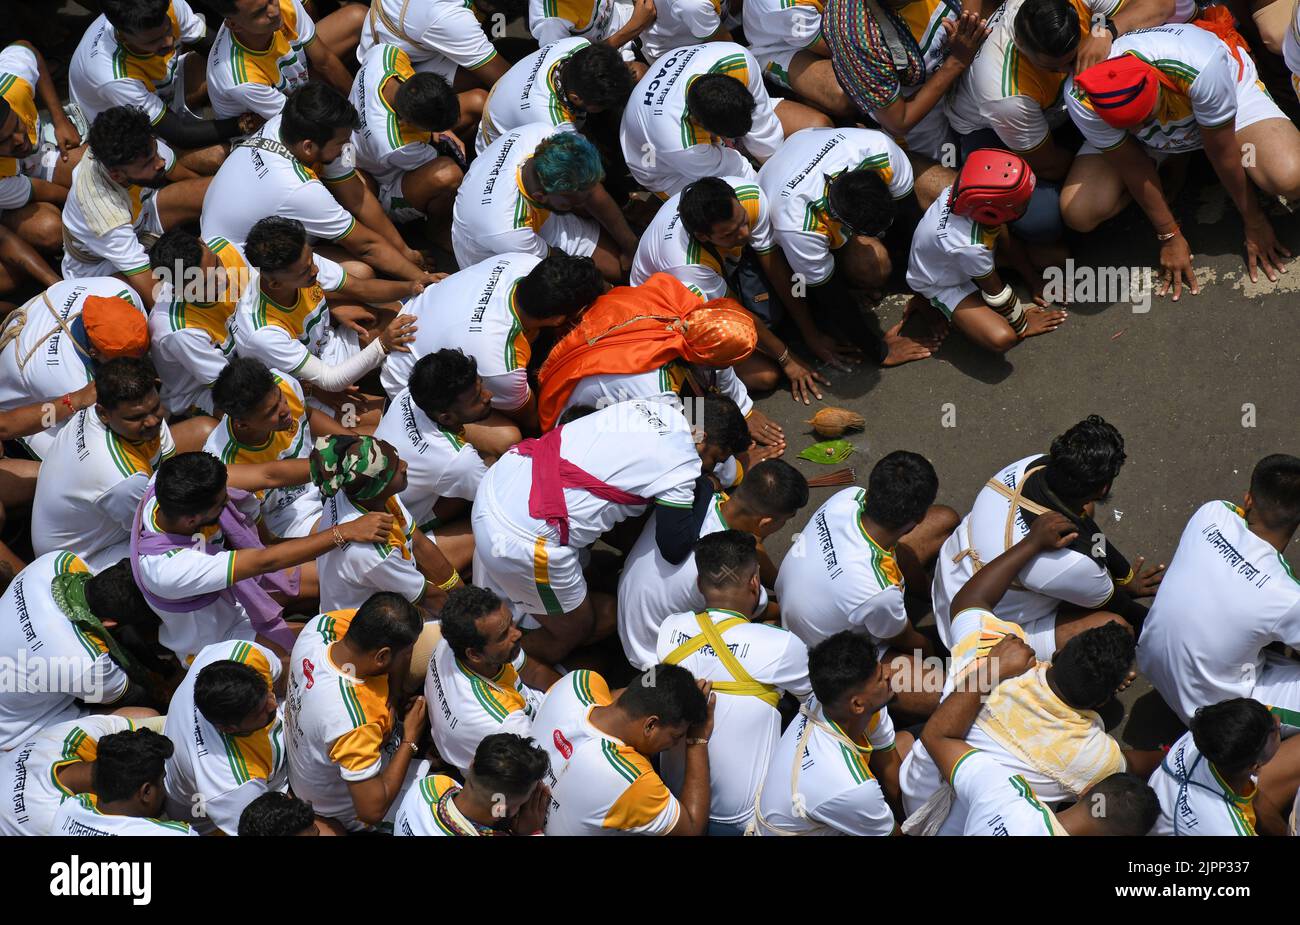 Mumbai, Indien. 19. August 2022. Hindu-Anhänger führen ein Ritual durch, bevor sie eine menschliche Pyramide bilden, um Dahi handi (irdischer Topf mit Quark gefüllt) während des Janmashtami-Festivals in Mumbai zu brechen. Janmashtami wird gefeiert, um die Geburt von Lord Krishna zu markieren. Hinduistische Anhänger versammeln sich auf den Straßen und bilden akrobatische Pyramiden, um Dahi handi (irdischer Topf mit Quark gefüllt) zu brechen, um den Anlass zu feiern. Kredit: SOPA Images Limited/Alamy Live Nachrichten Stockfoto